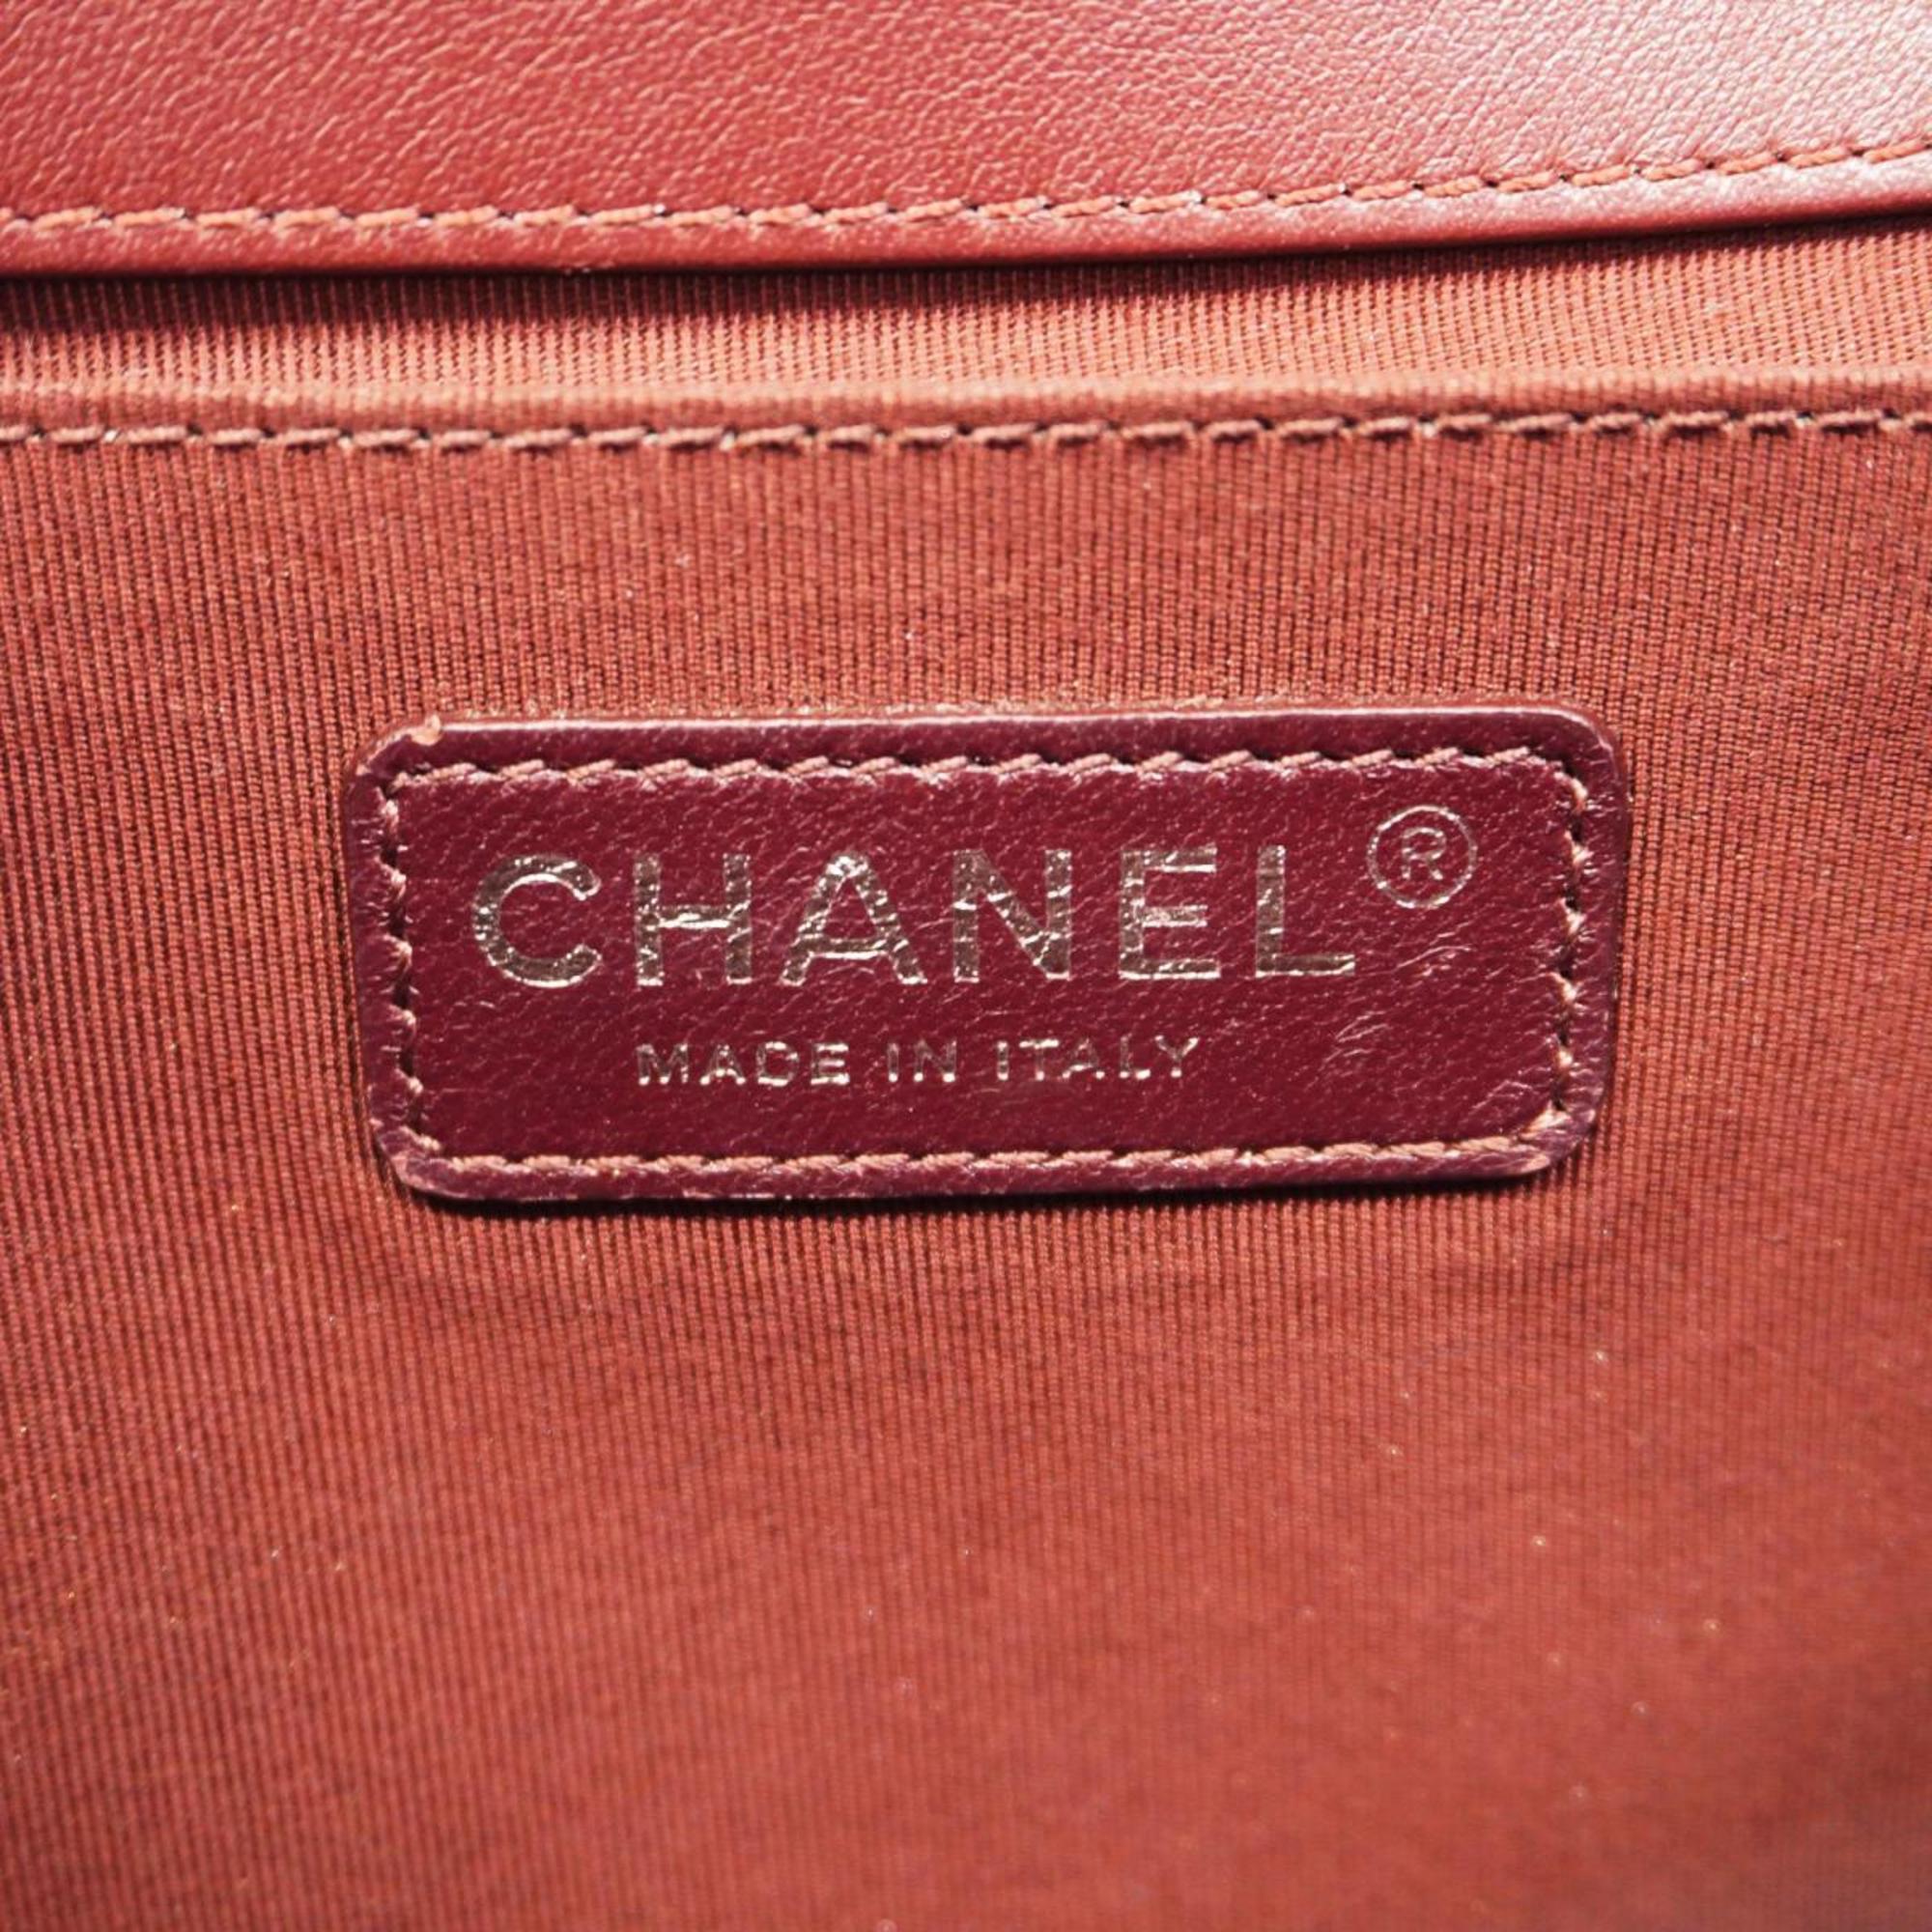 Chanel Shoulder Bag Boy Chain Suede Bordeaux Women's